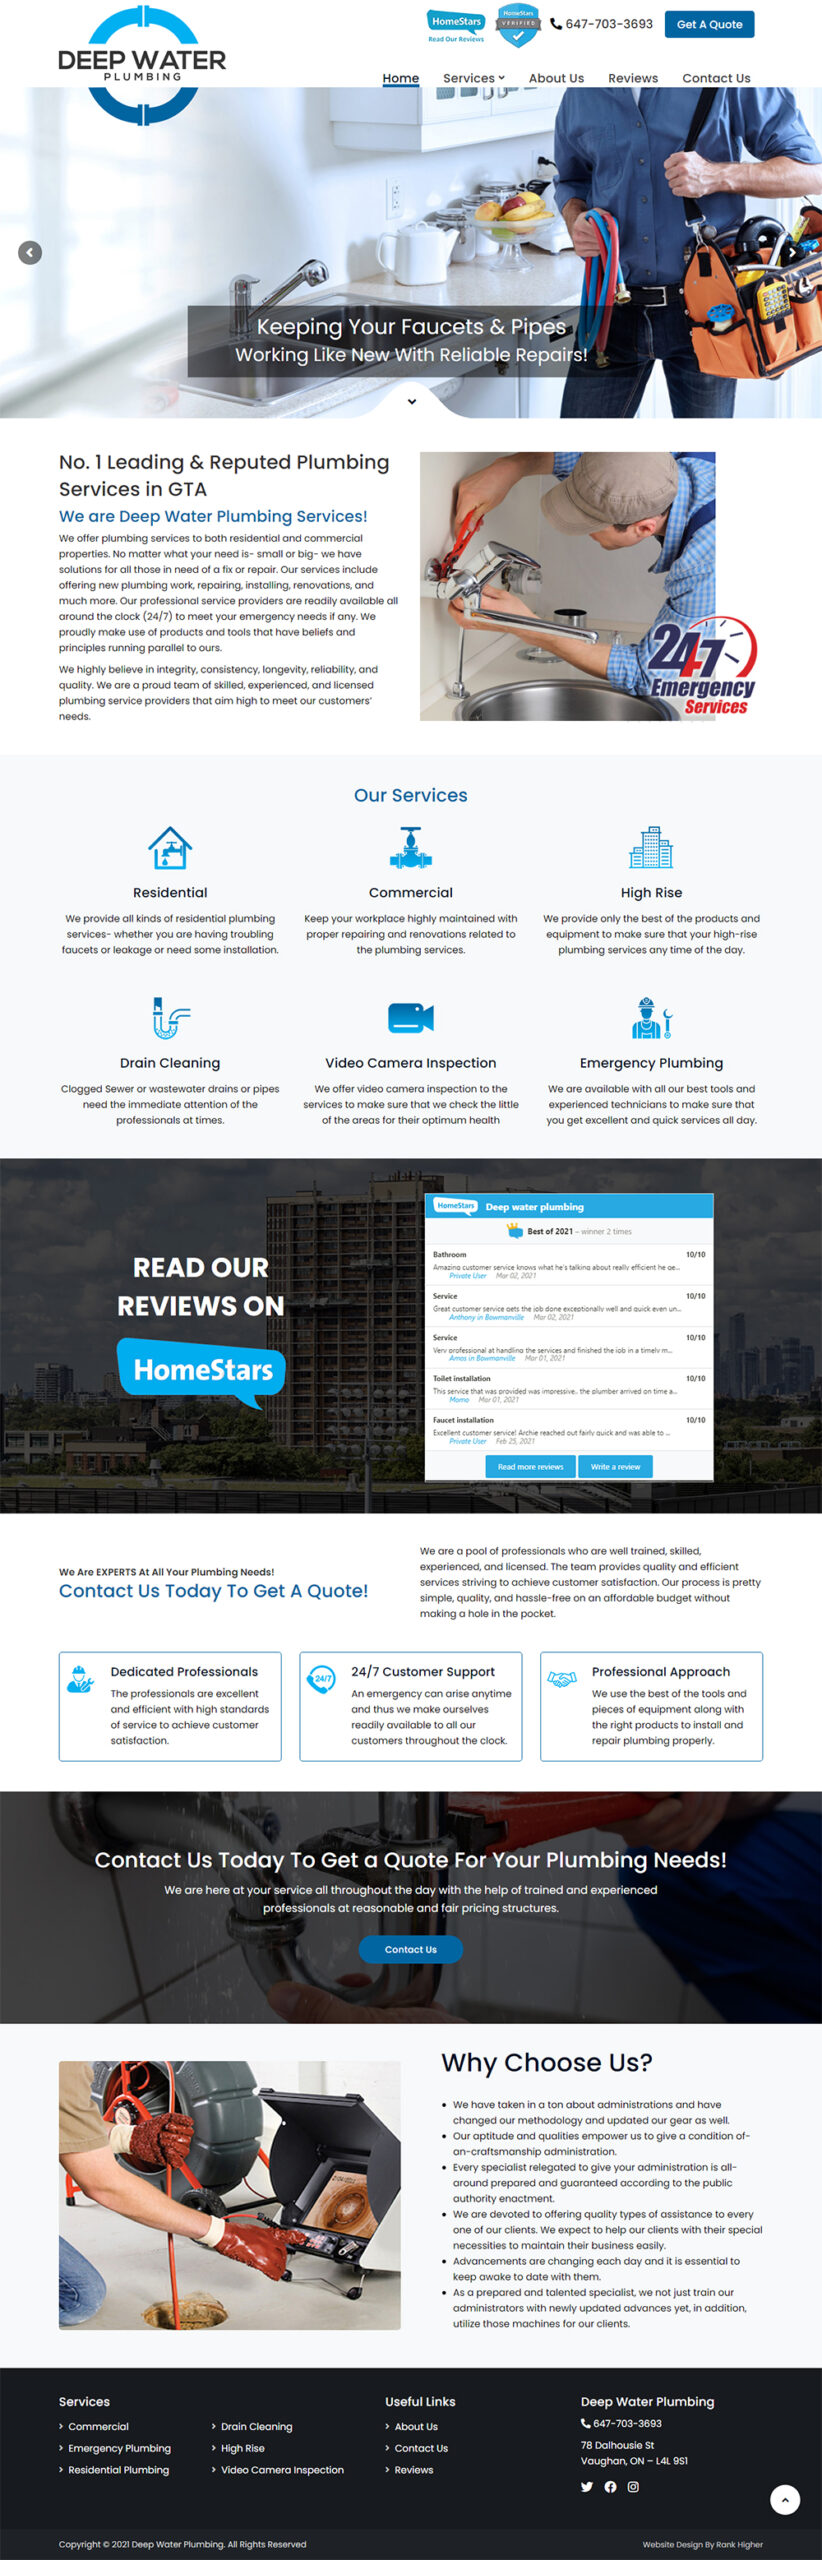 Website Design Surrey